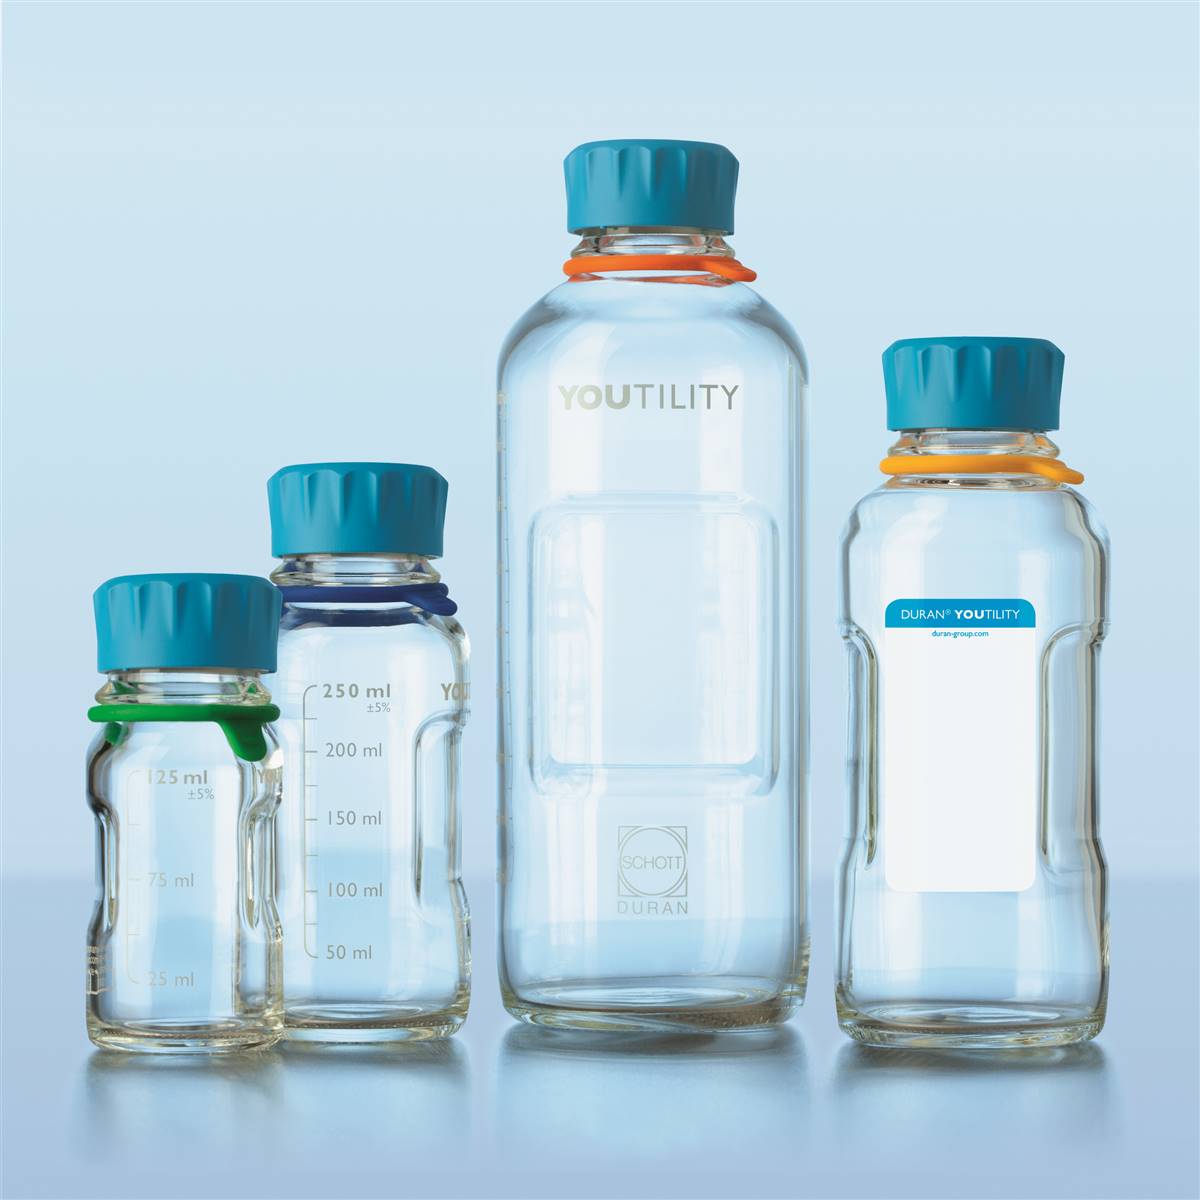 DURAN® Youtility Reagent / Storage Bottle - 125ml